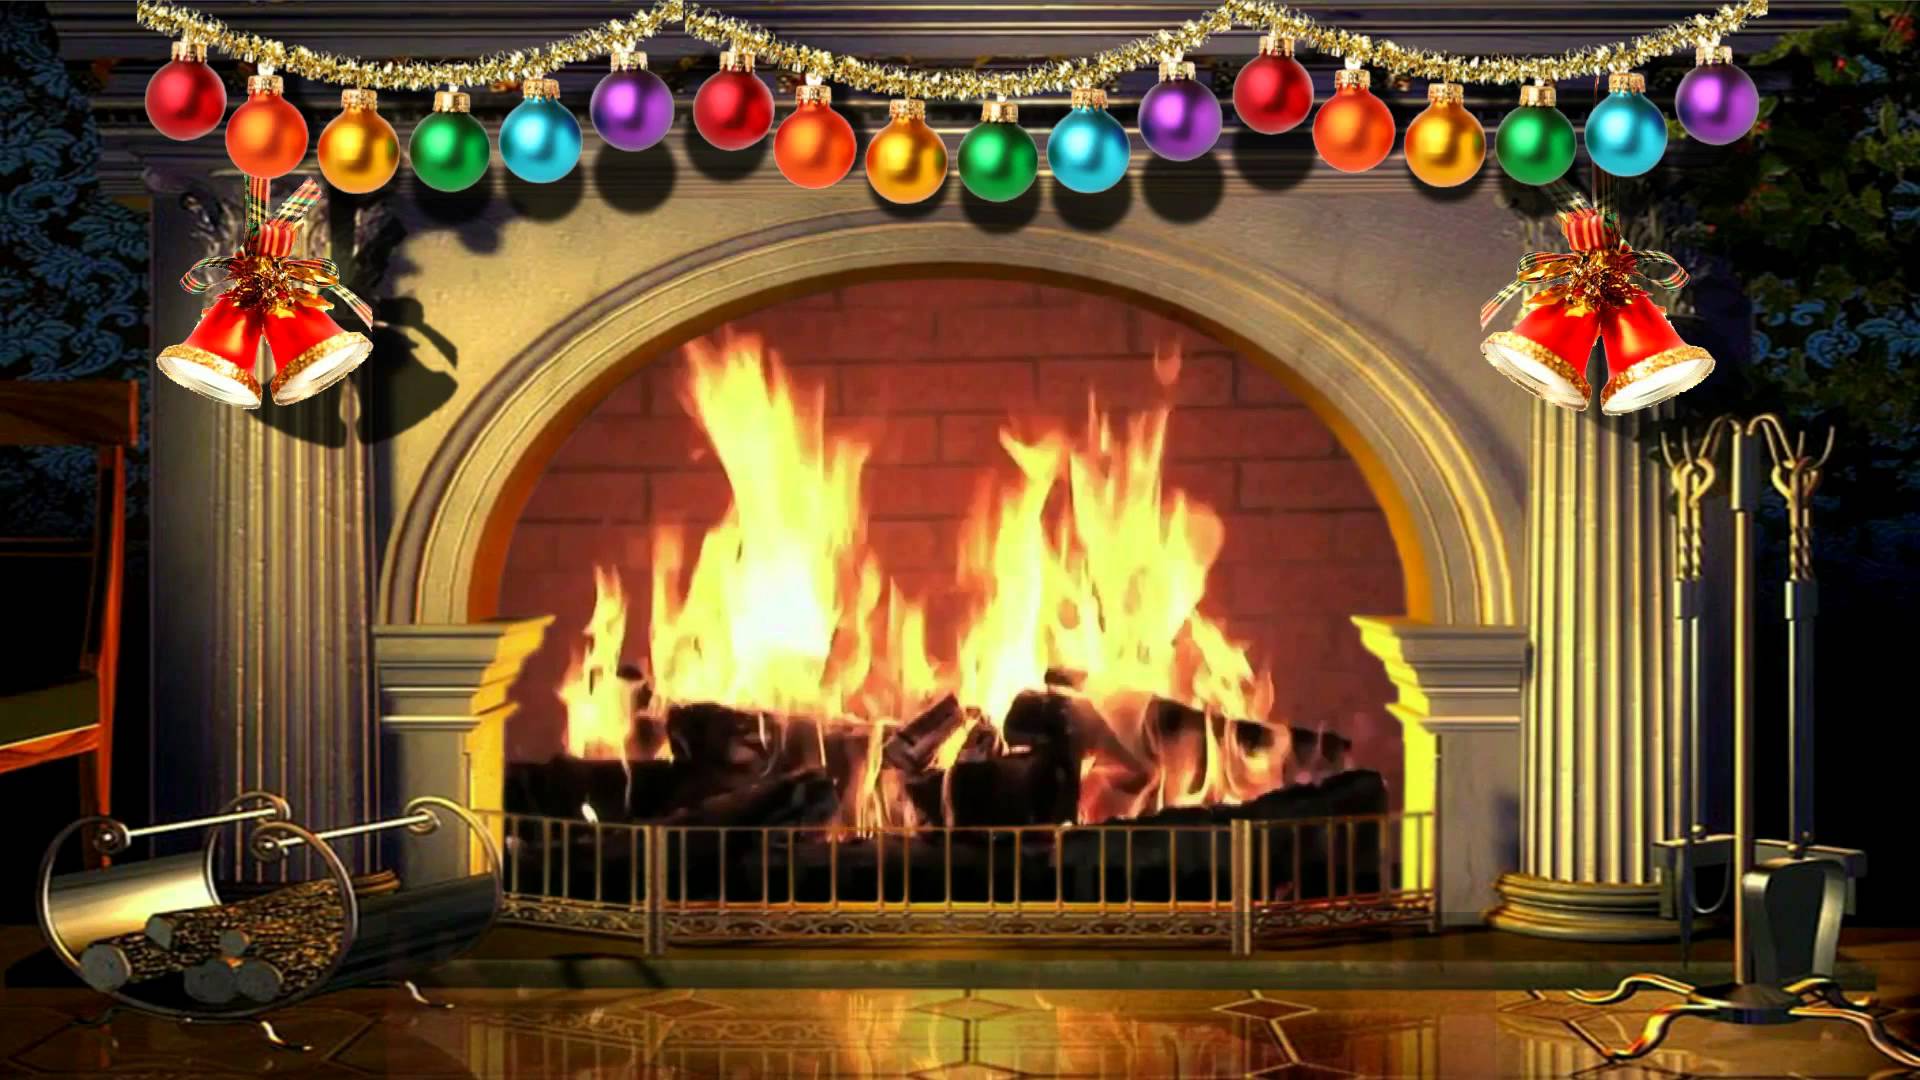 Tận hưởng mùa Giáng Sinh ấm áp và lãng mạn với ngọn lửa ảo tuyệt đẹp từ Virtual Christmas Fireplace. Đây là sự kết hợp hoàn hảo giữa hiệu ứng âm thanh và hình ảnh, mang đến cho bạn cảm giác như đang ngồi bên lò sưởi thật sự. Hãy tìm hiểu ngay để có một mùa lễ tuyệt vời hơn bao giờ hết!